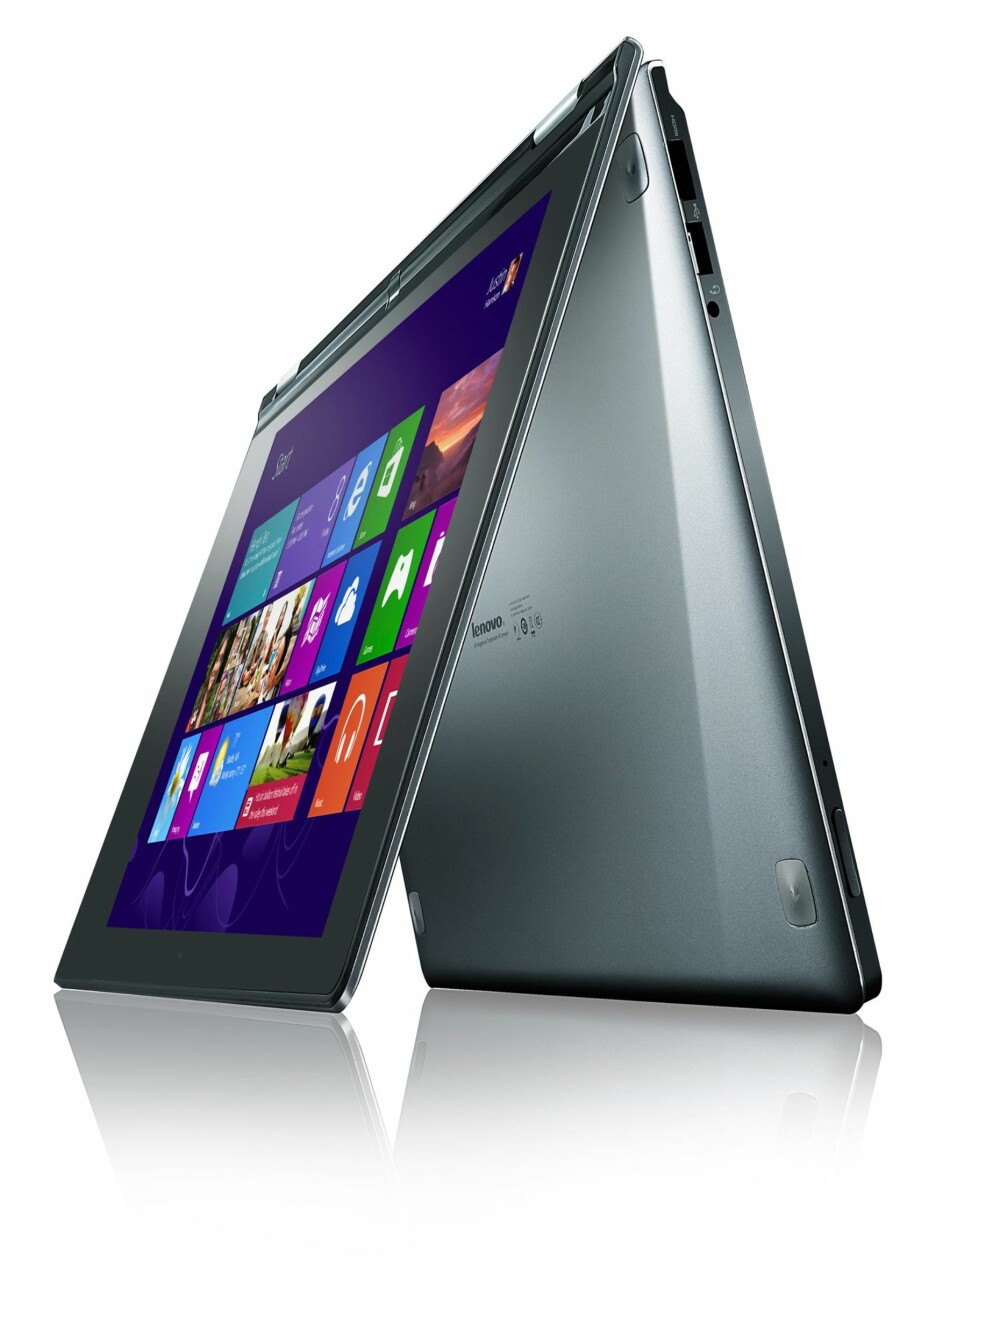 Lenovo IdeaPad Yoga 13: Denne PC-en har en 13.3 tommers skjerm og du kan vri hengsene helt rundt og bruke den slik du ser på bildet.